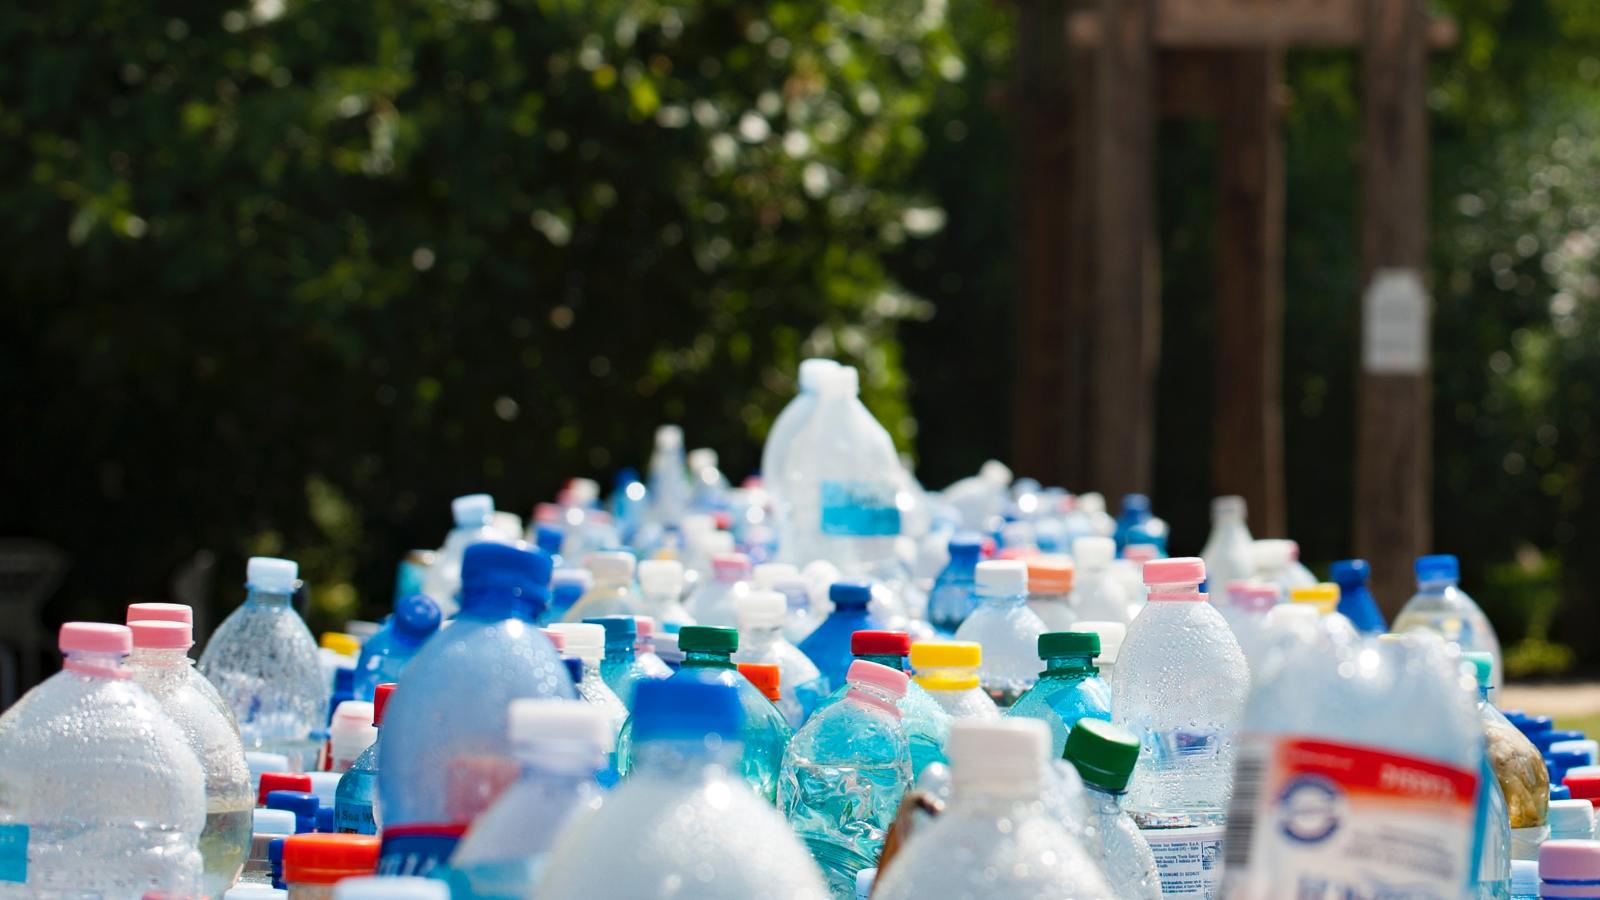 Dozens of plastic bottles